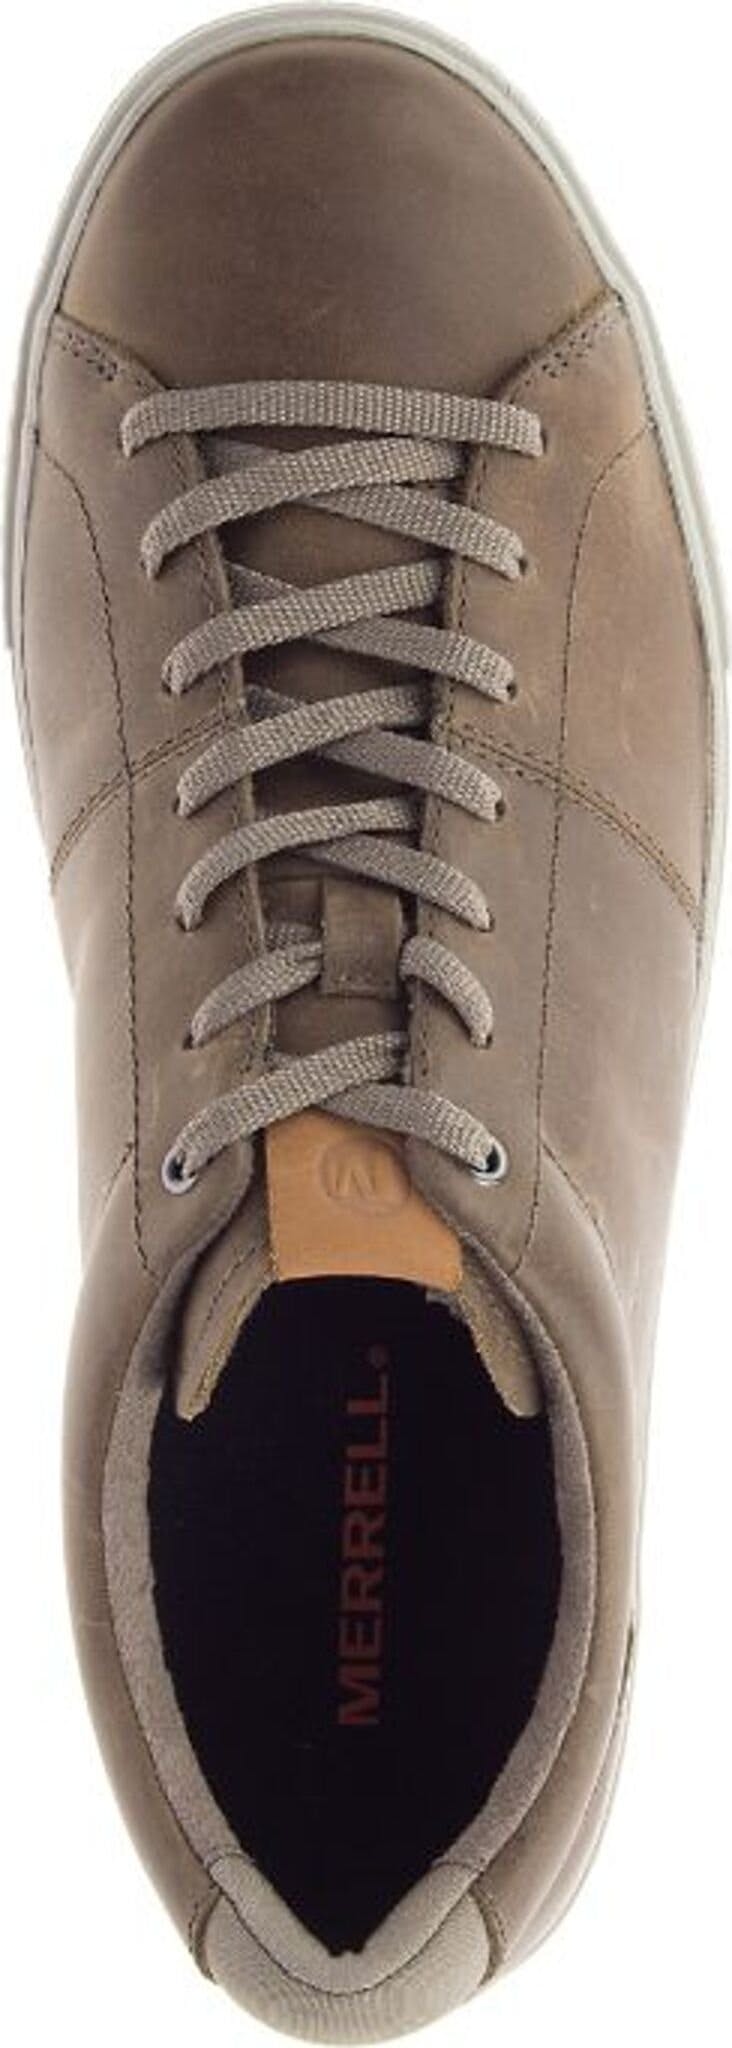 Numéro de l'image de la galerie de produits 4 pour le produit Chaussures Barkley Capture - Homme